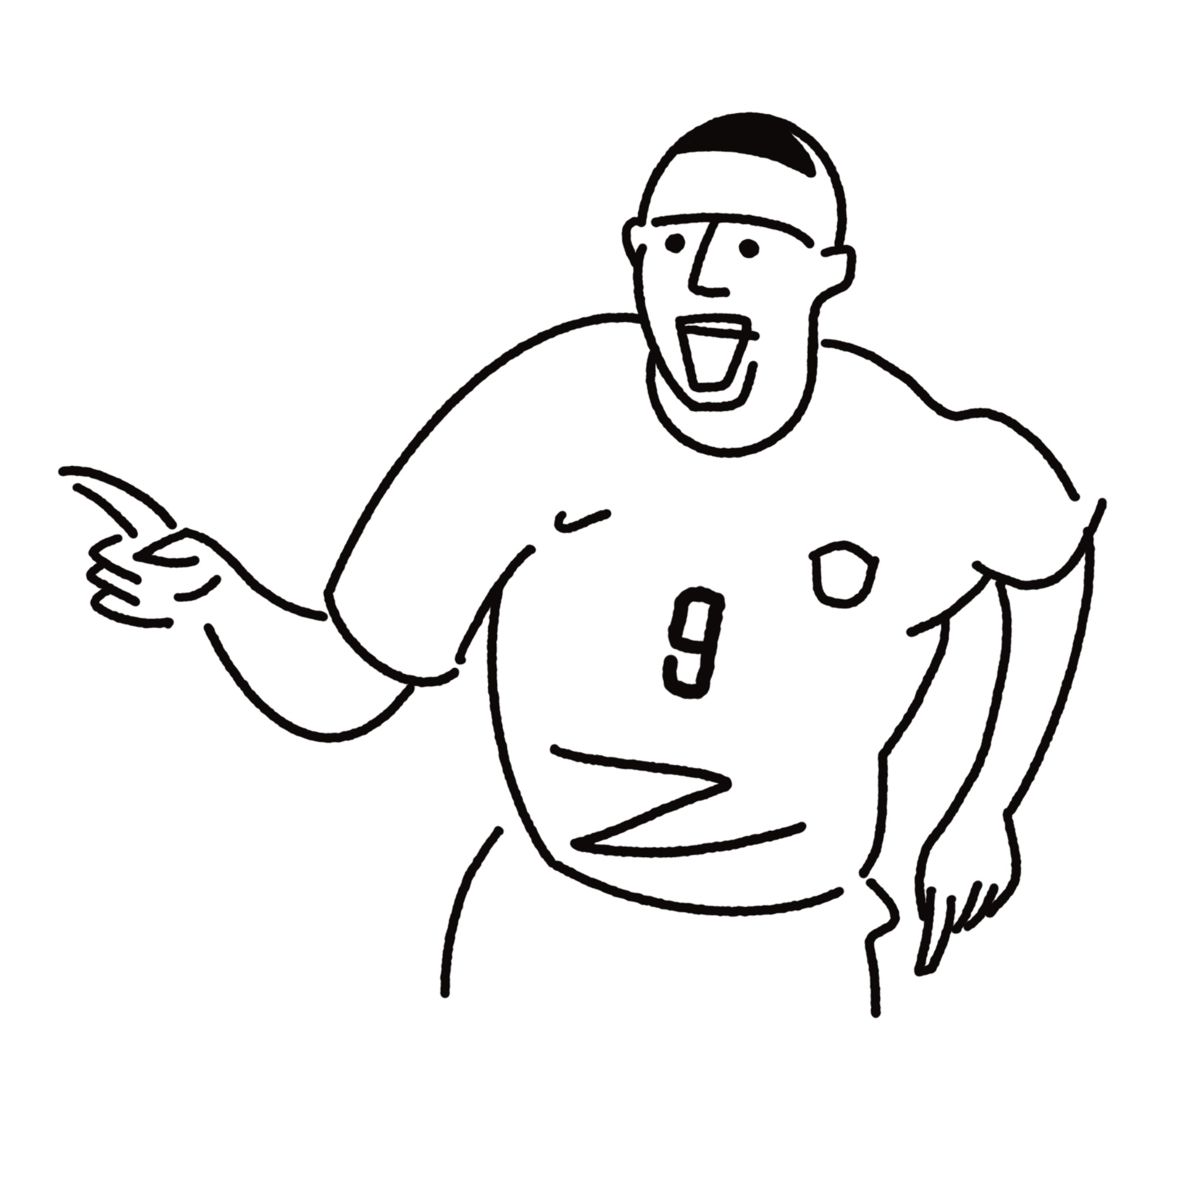 Ronaldo Nazario | Okay gesture